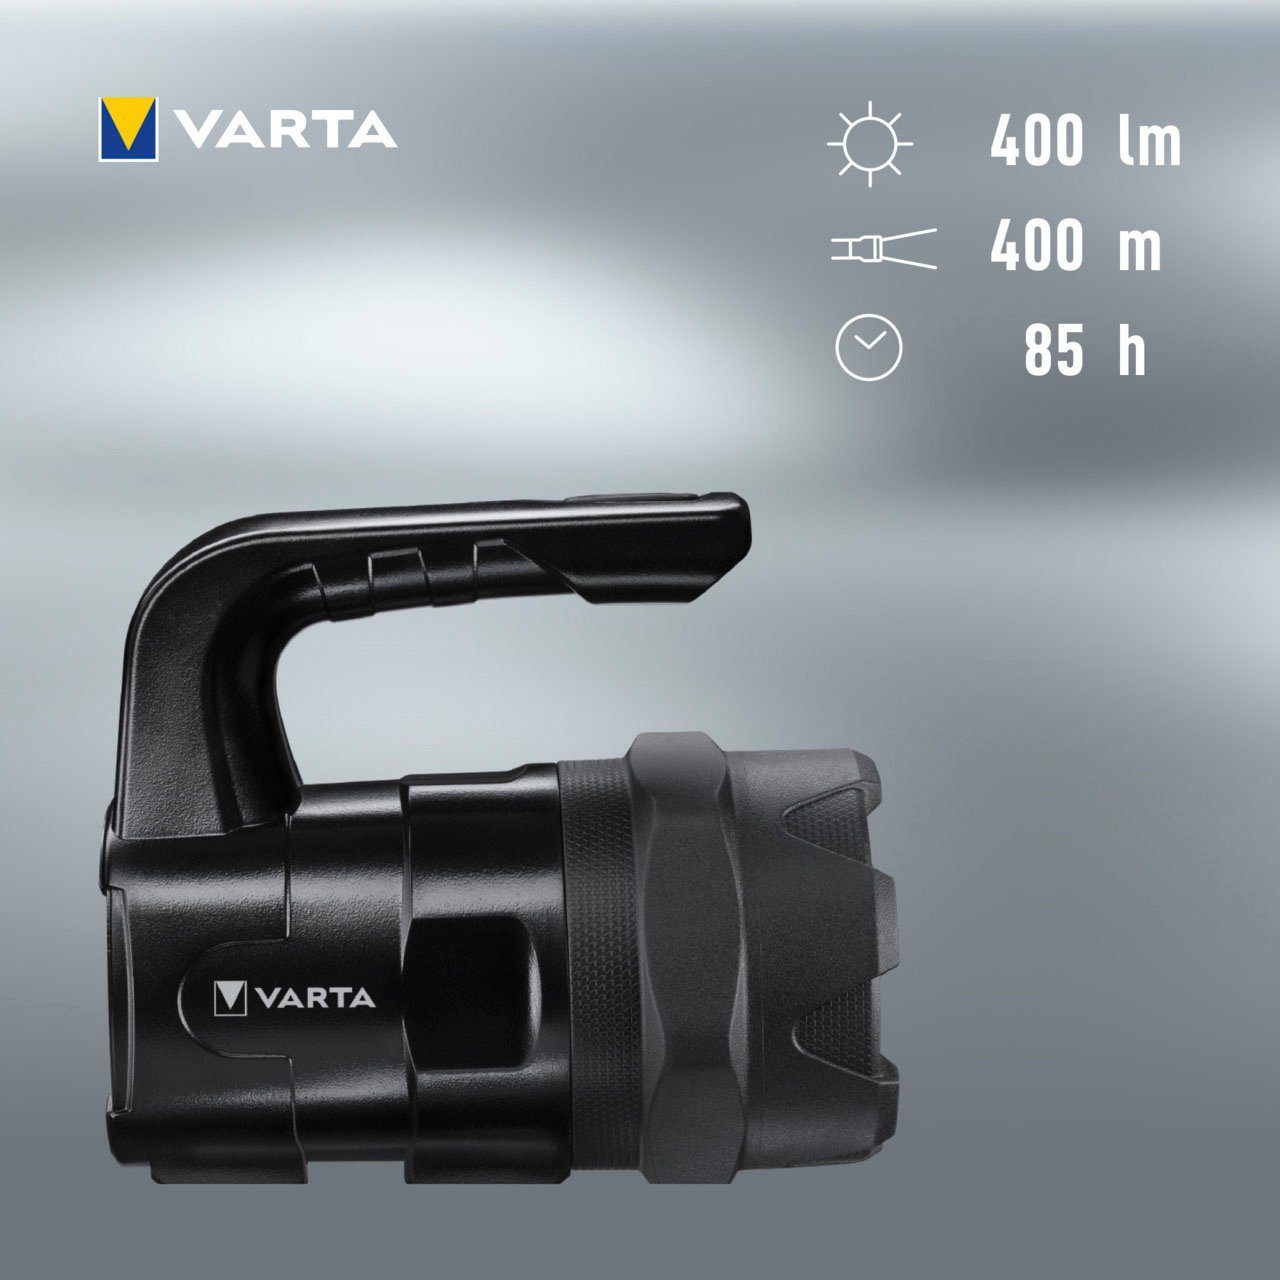 VARTA Taschenlampe Pro wasser- 6 eloxiertes (7-St), BL20 Indestructible stoßabsorbierend, und Watt Gehäuse LED staubdicht, Aluminium